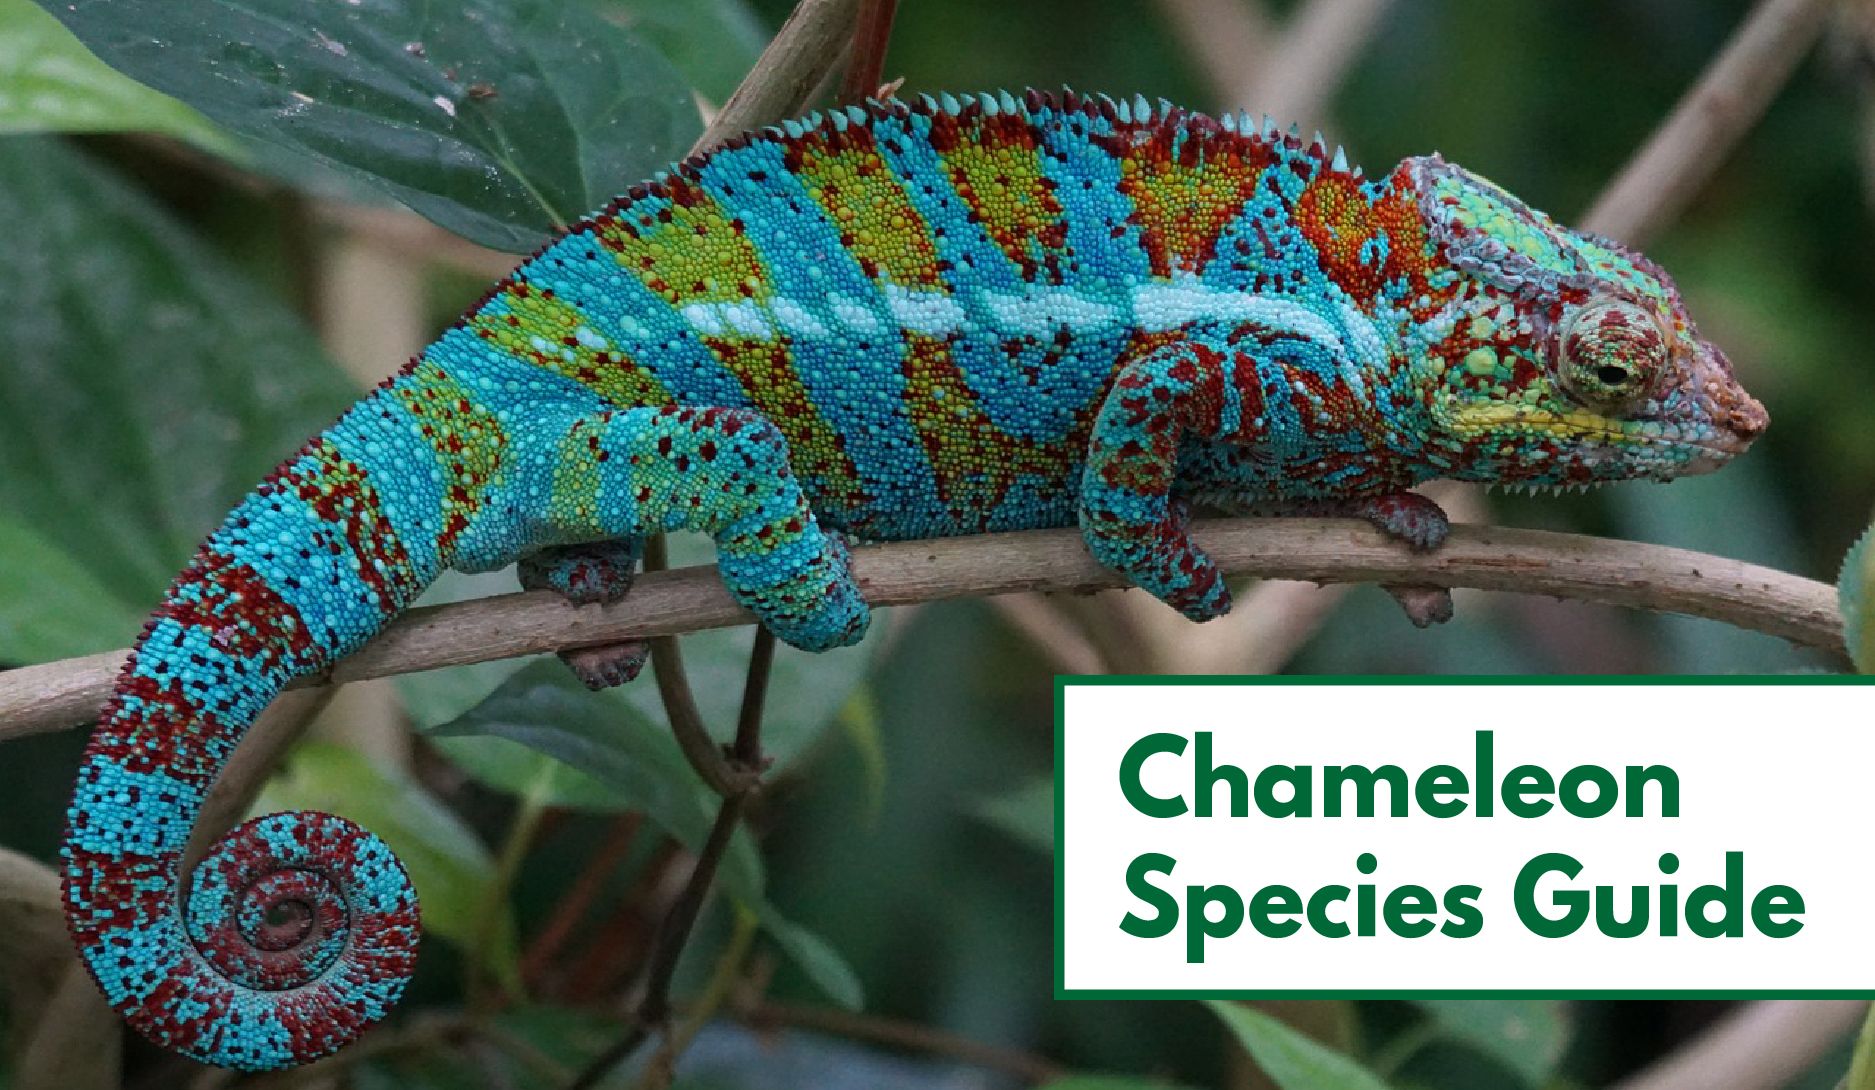 Types of Chameleon